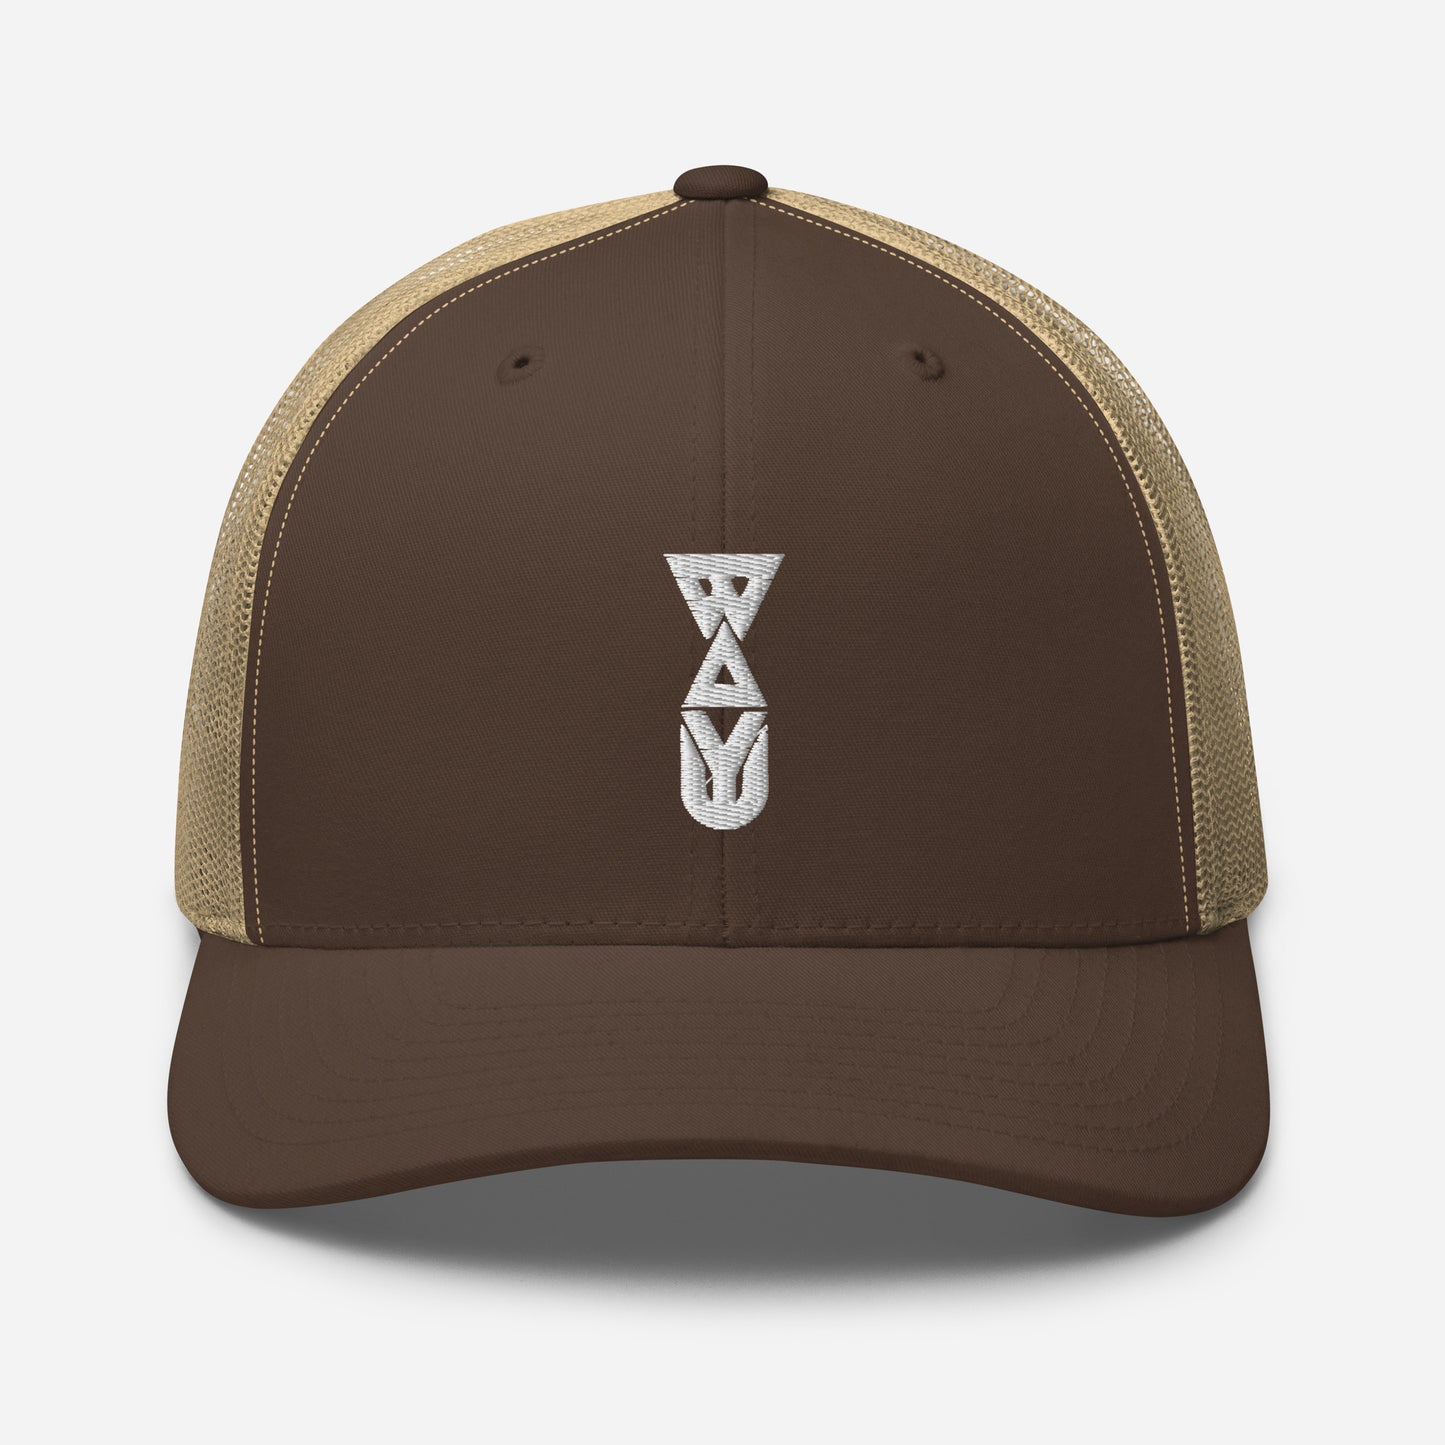 WAYU Logo - Trucker Cap